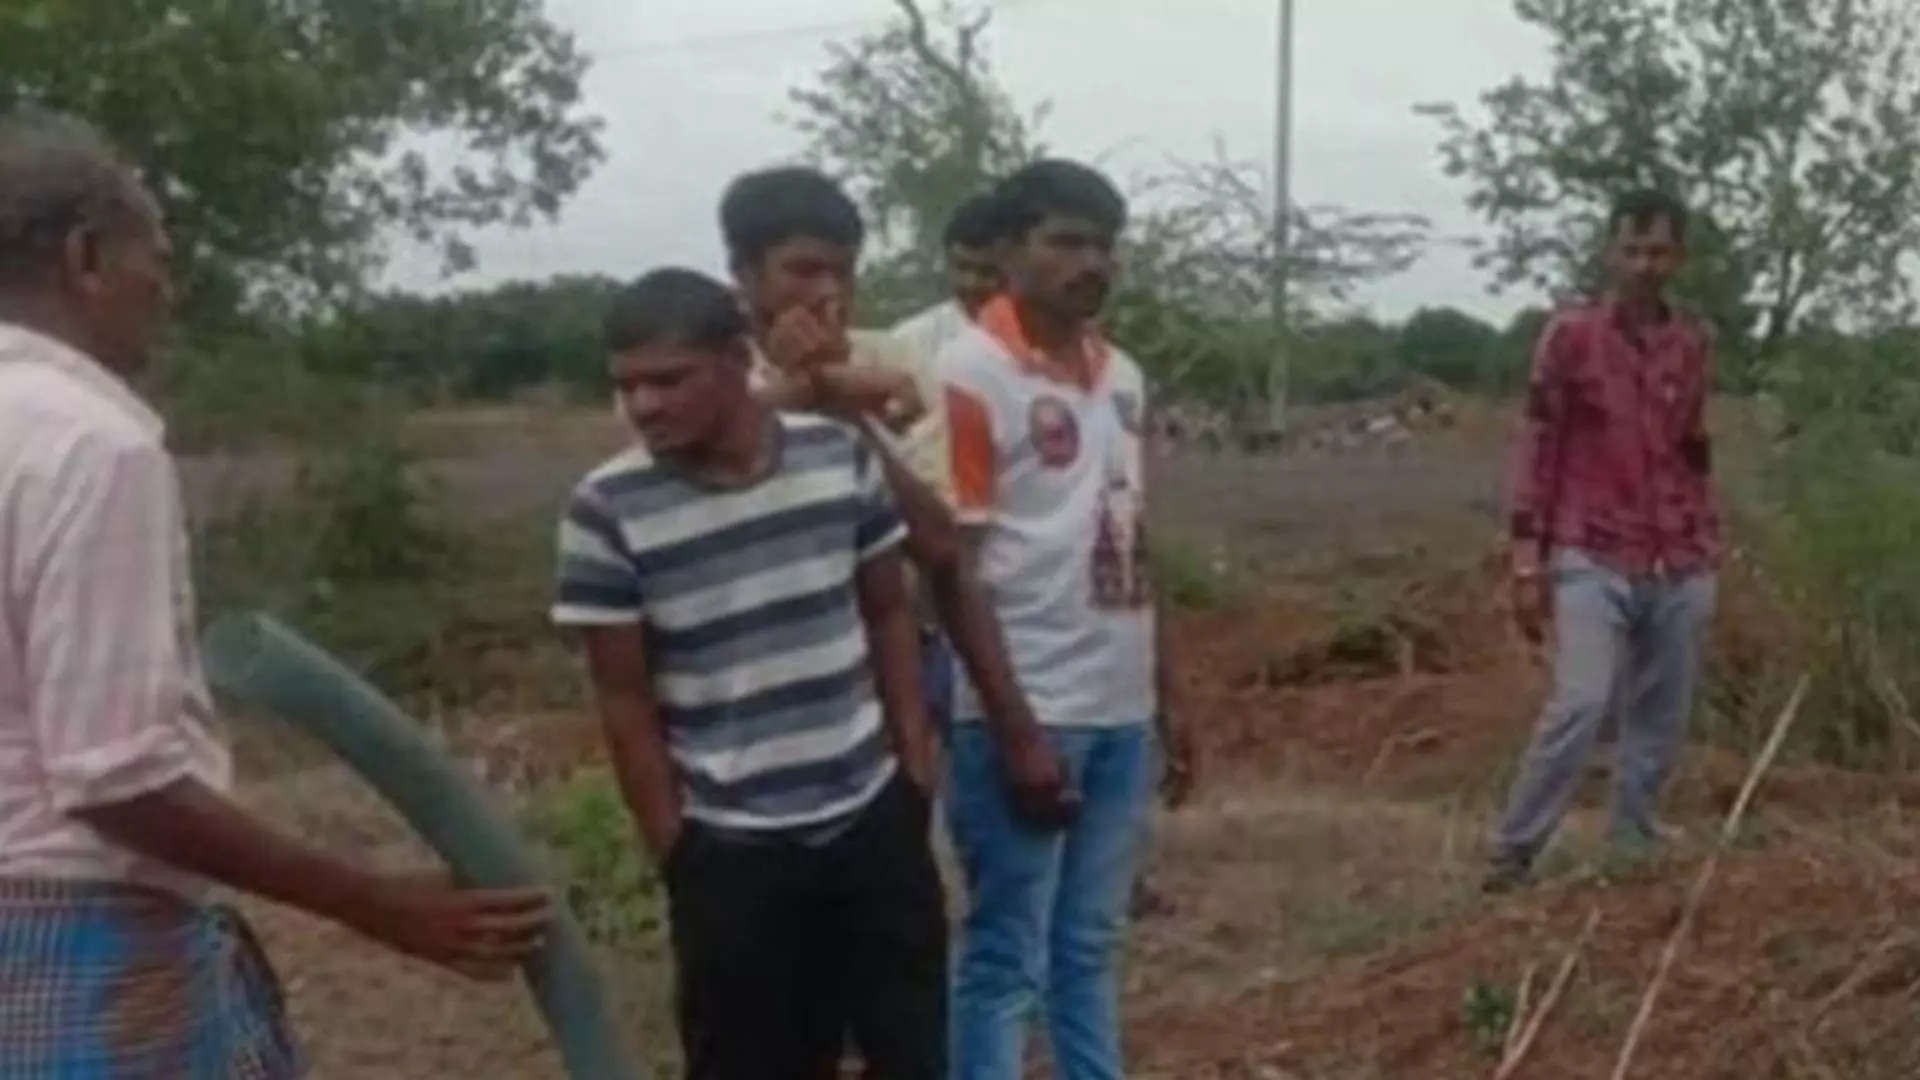 Karnataka: People dig graves, make corpses drink water in spooky ritual  hoping it brings rain to 'cursed' village